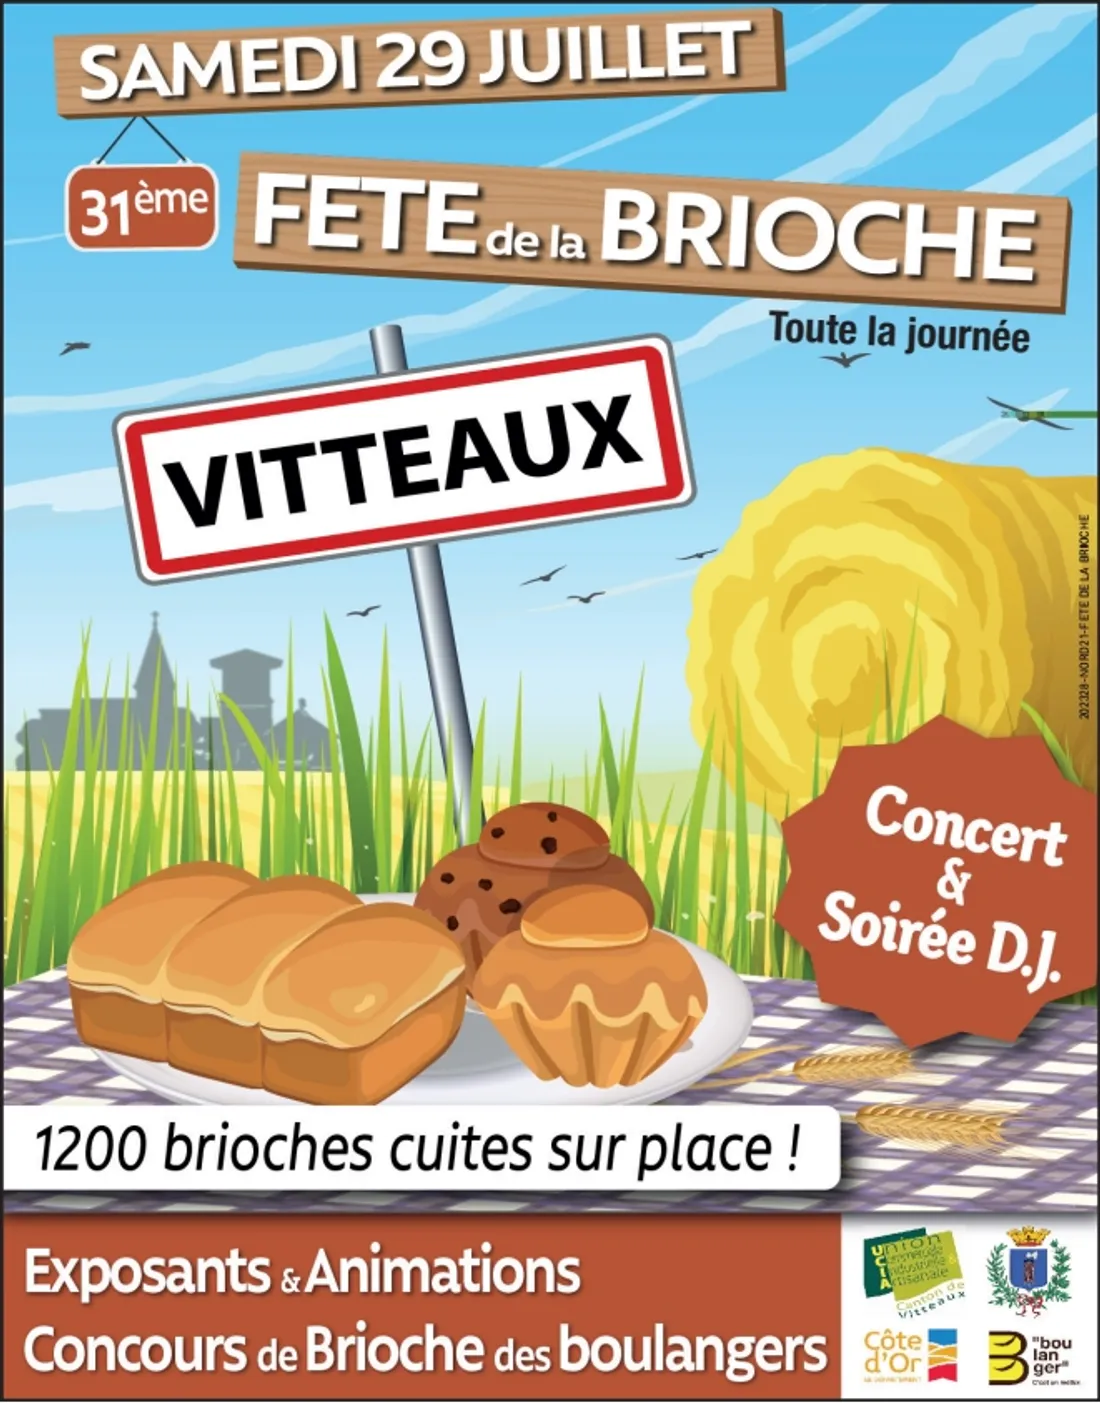 La 31ème édition de la fête de la Brioche se tiendra samedi 29 juillet à Vitteaux.